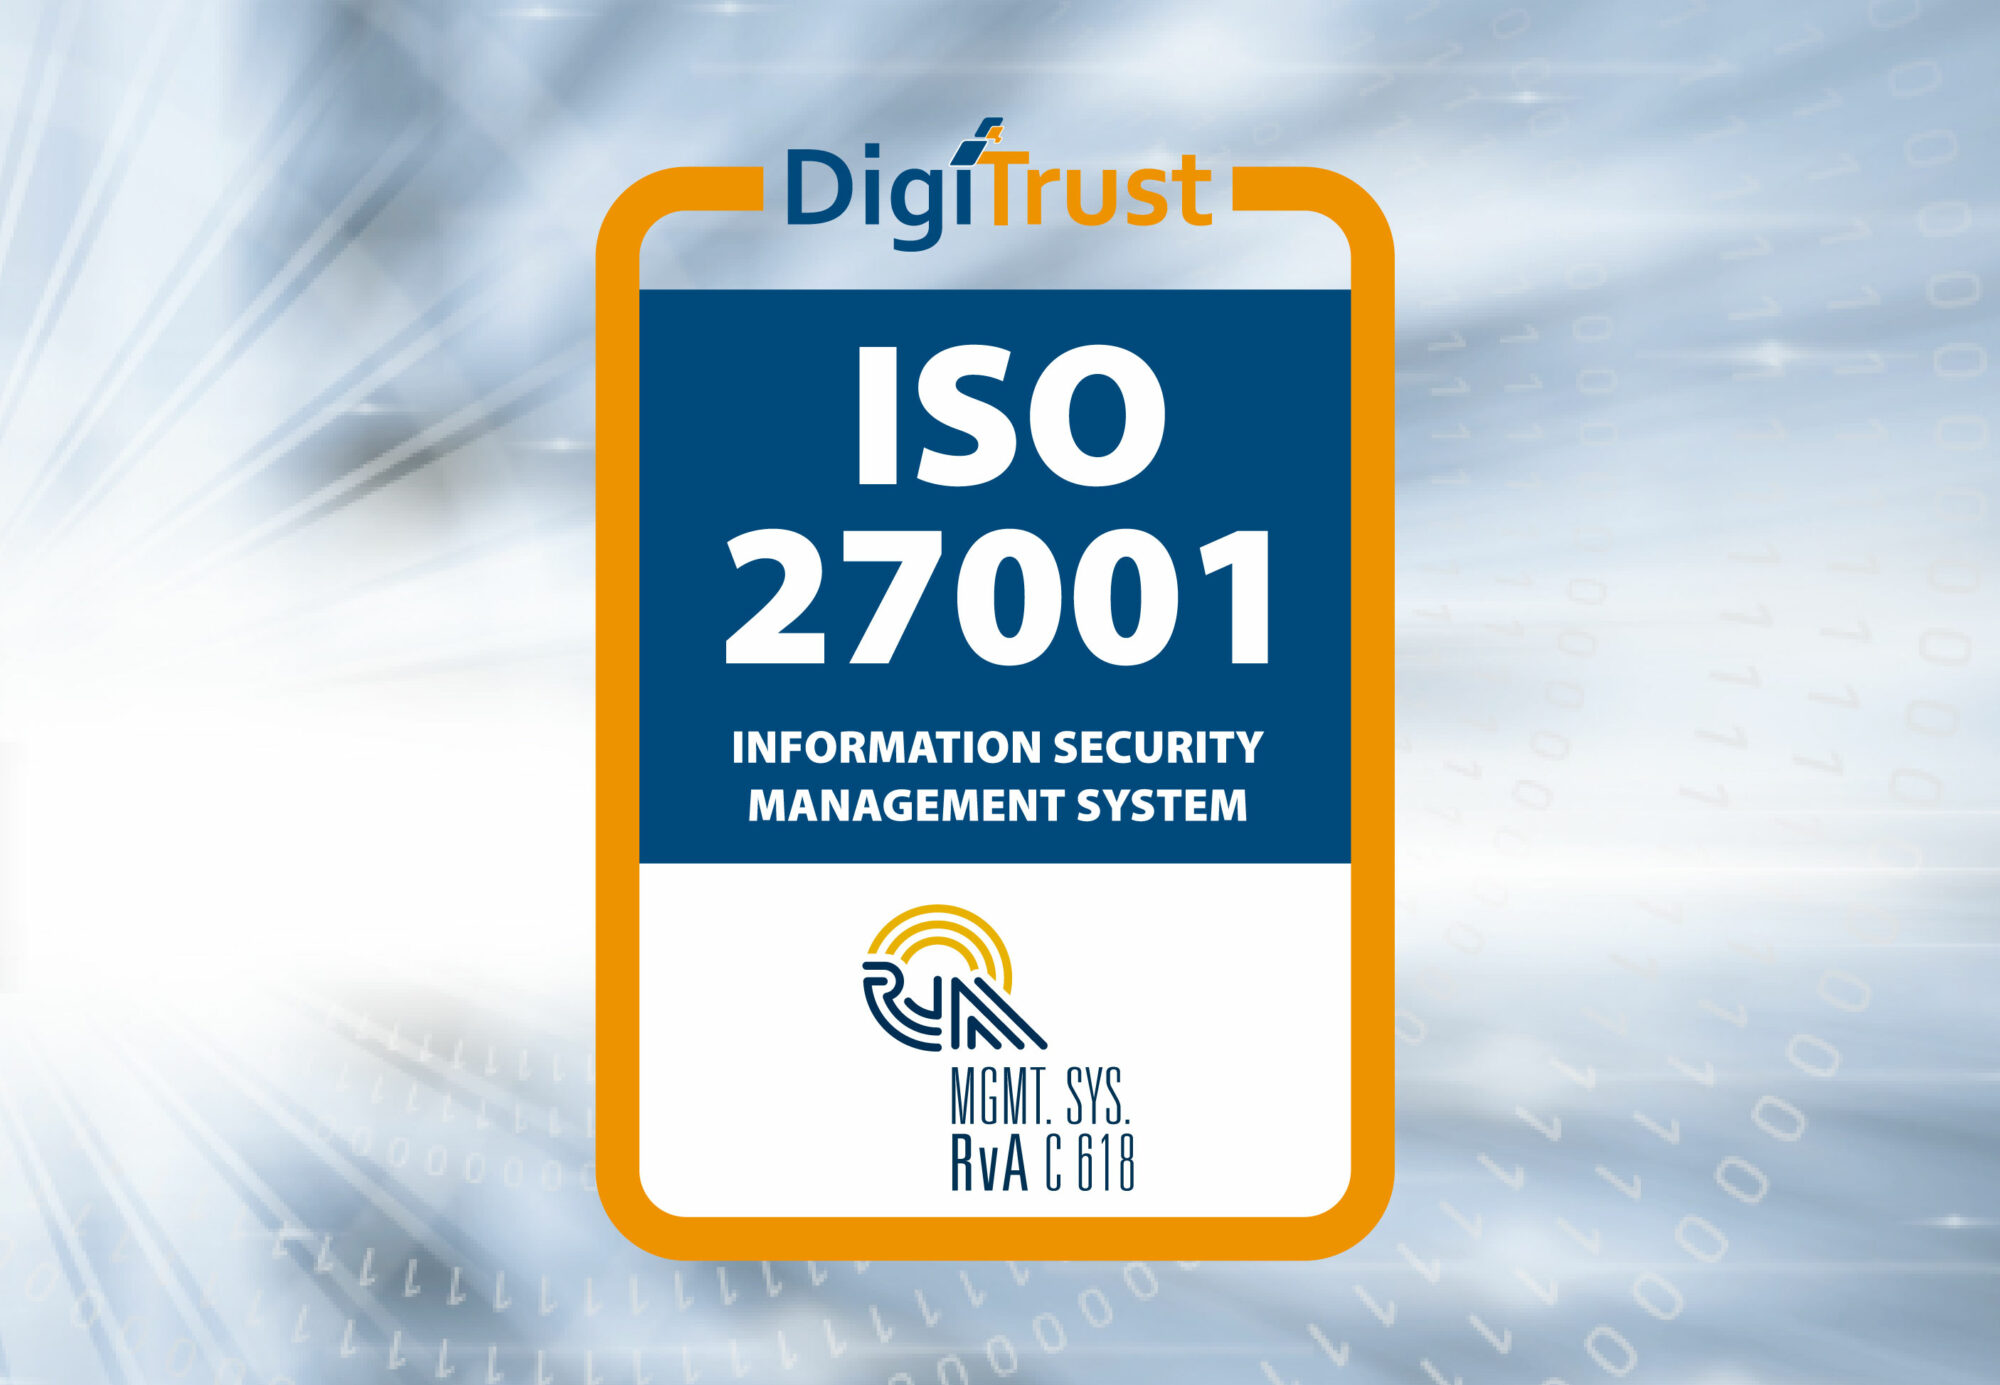 Inergy behaalt succesvol de certificering voor de nieuwe ISO27001:2022 norm voor informatiebeveiliging